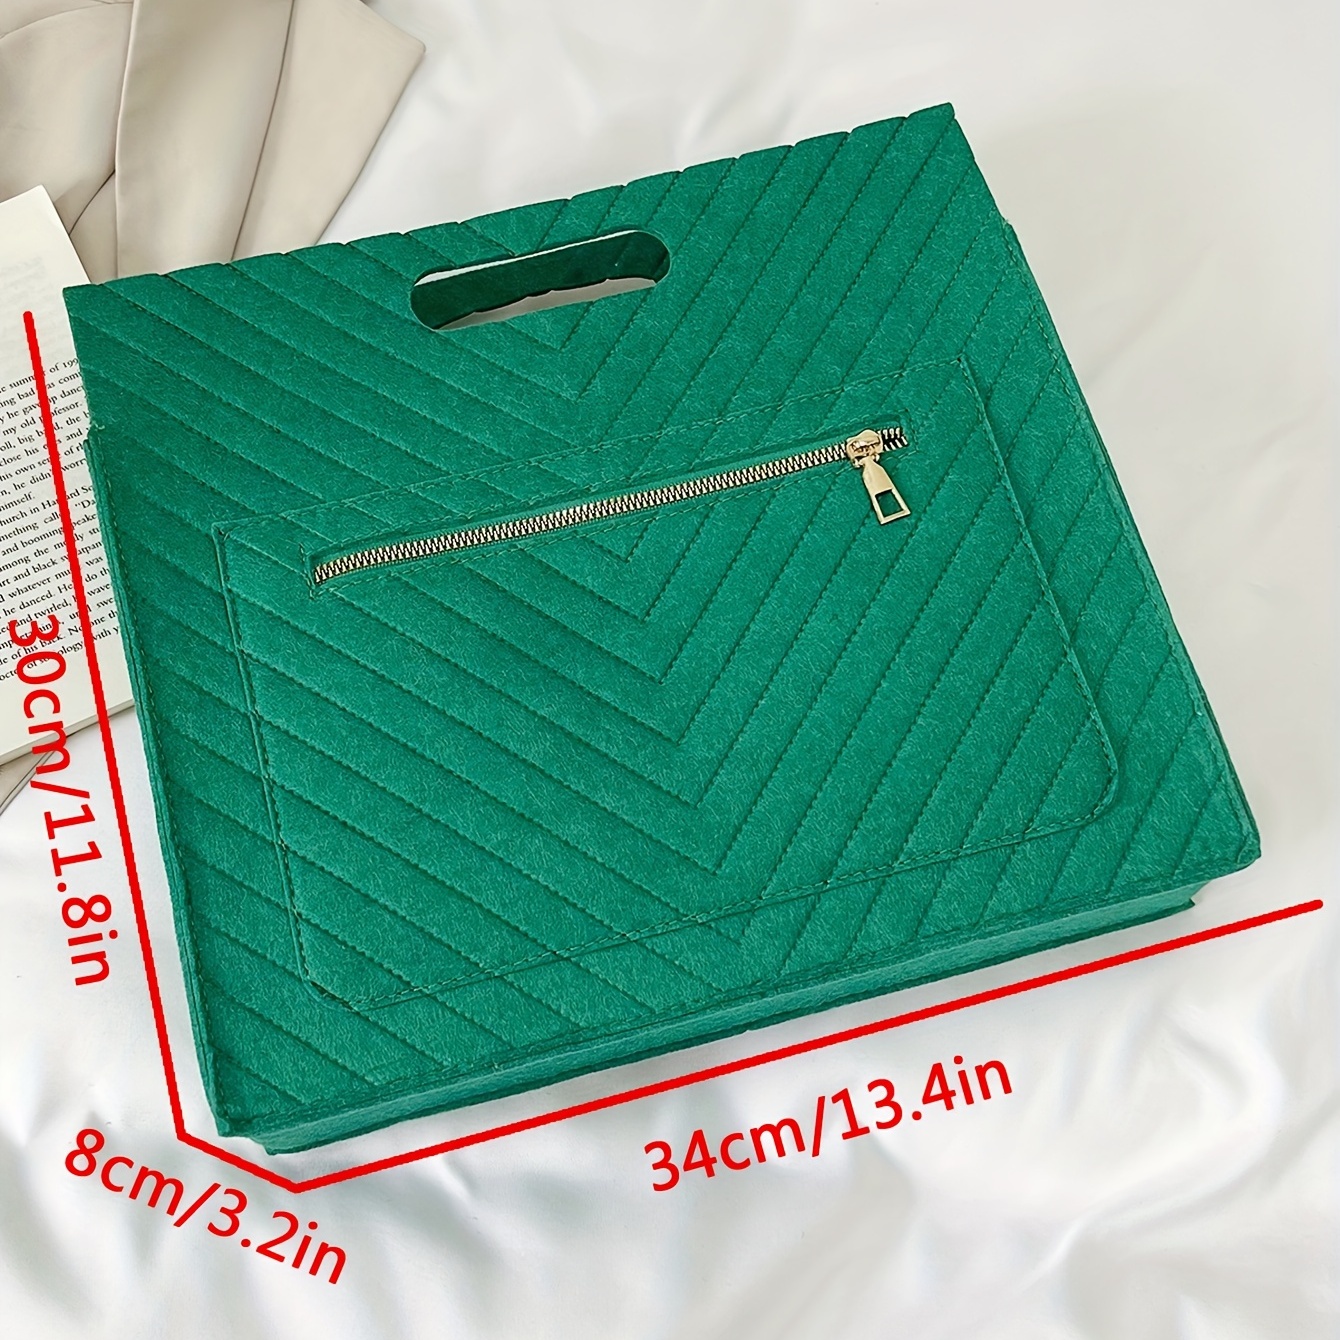 Solid Color Versatile Tote Bag, Striped Embossed Zipper Handbag, Large  Capacity Square Tote Bag - Temu United Arab Emirates